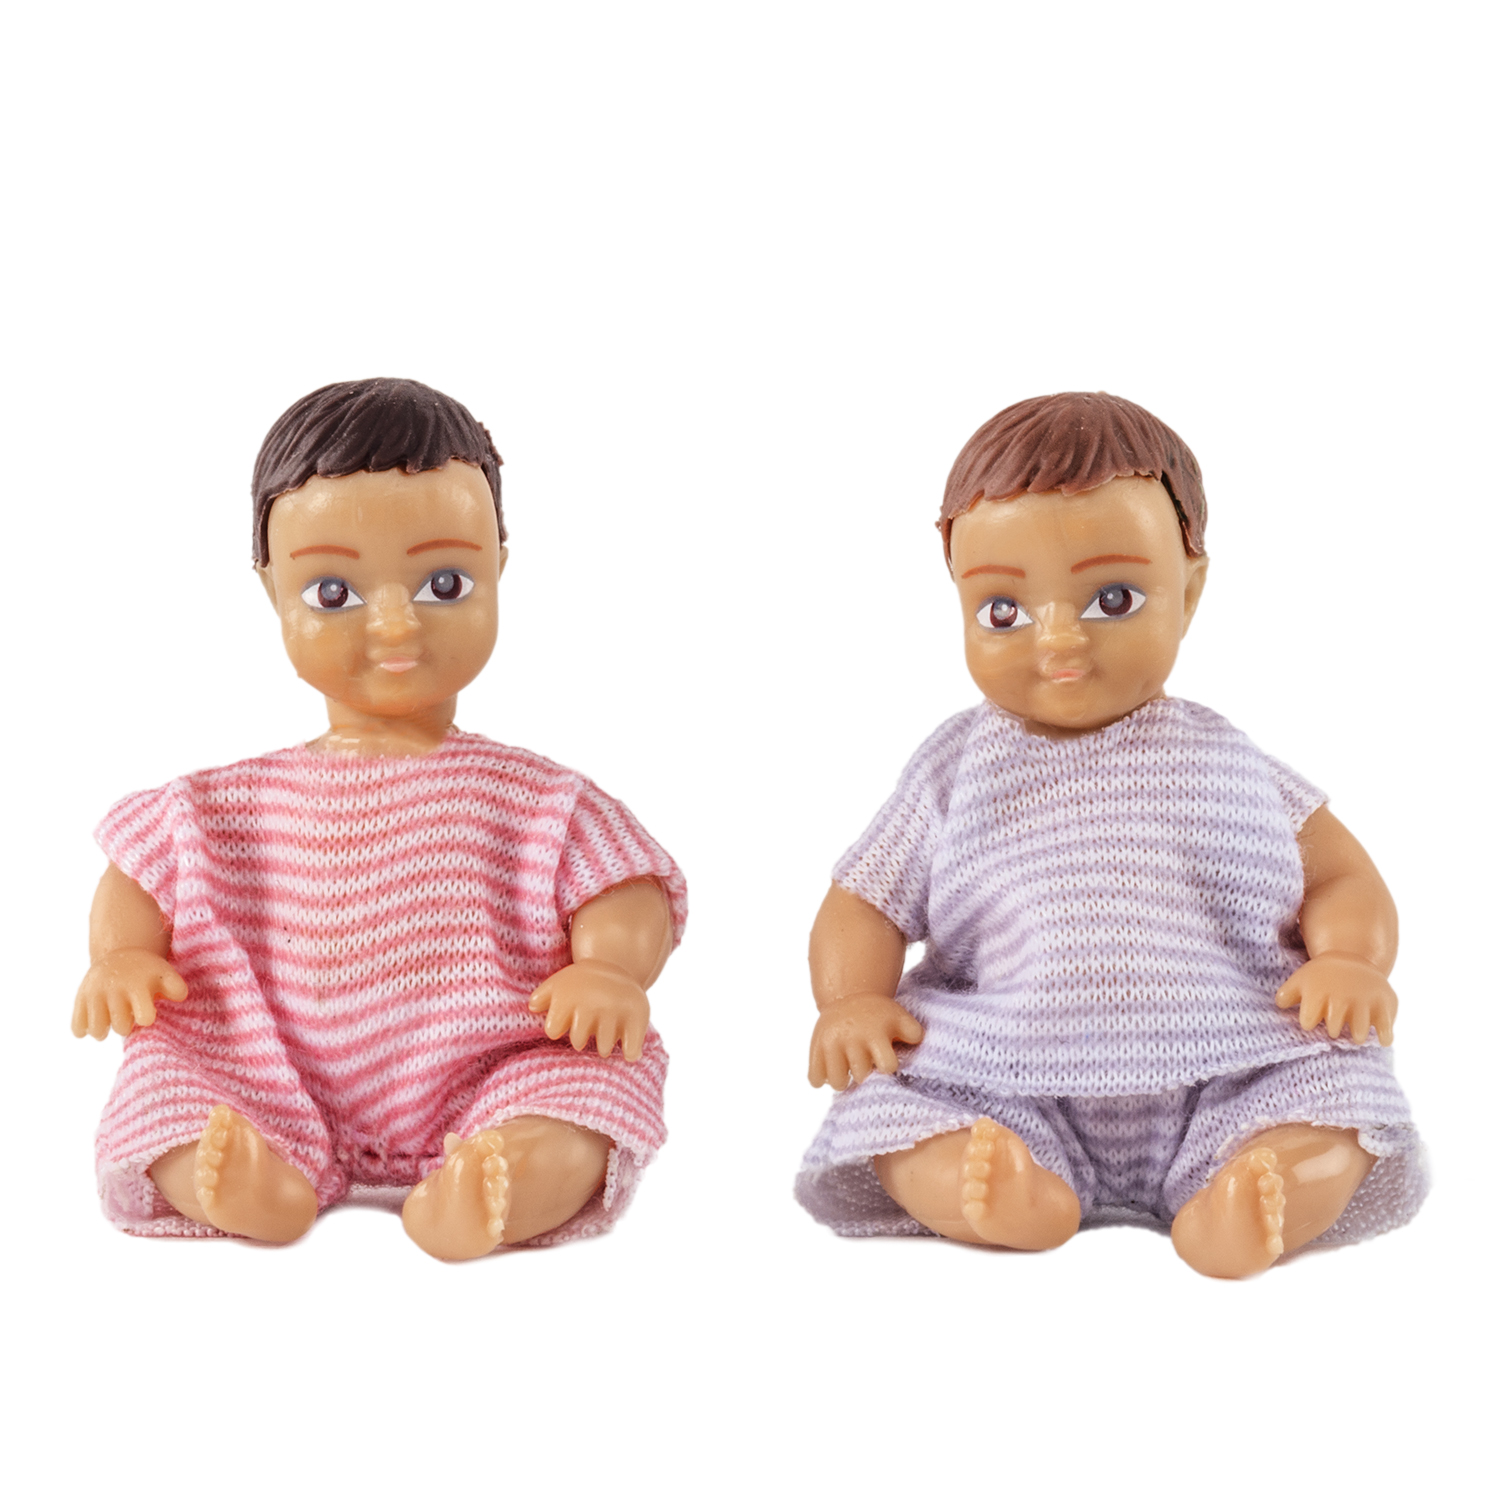 Dollhouse dolls & animals	 lundby dollhouse dolls 2 babies